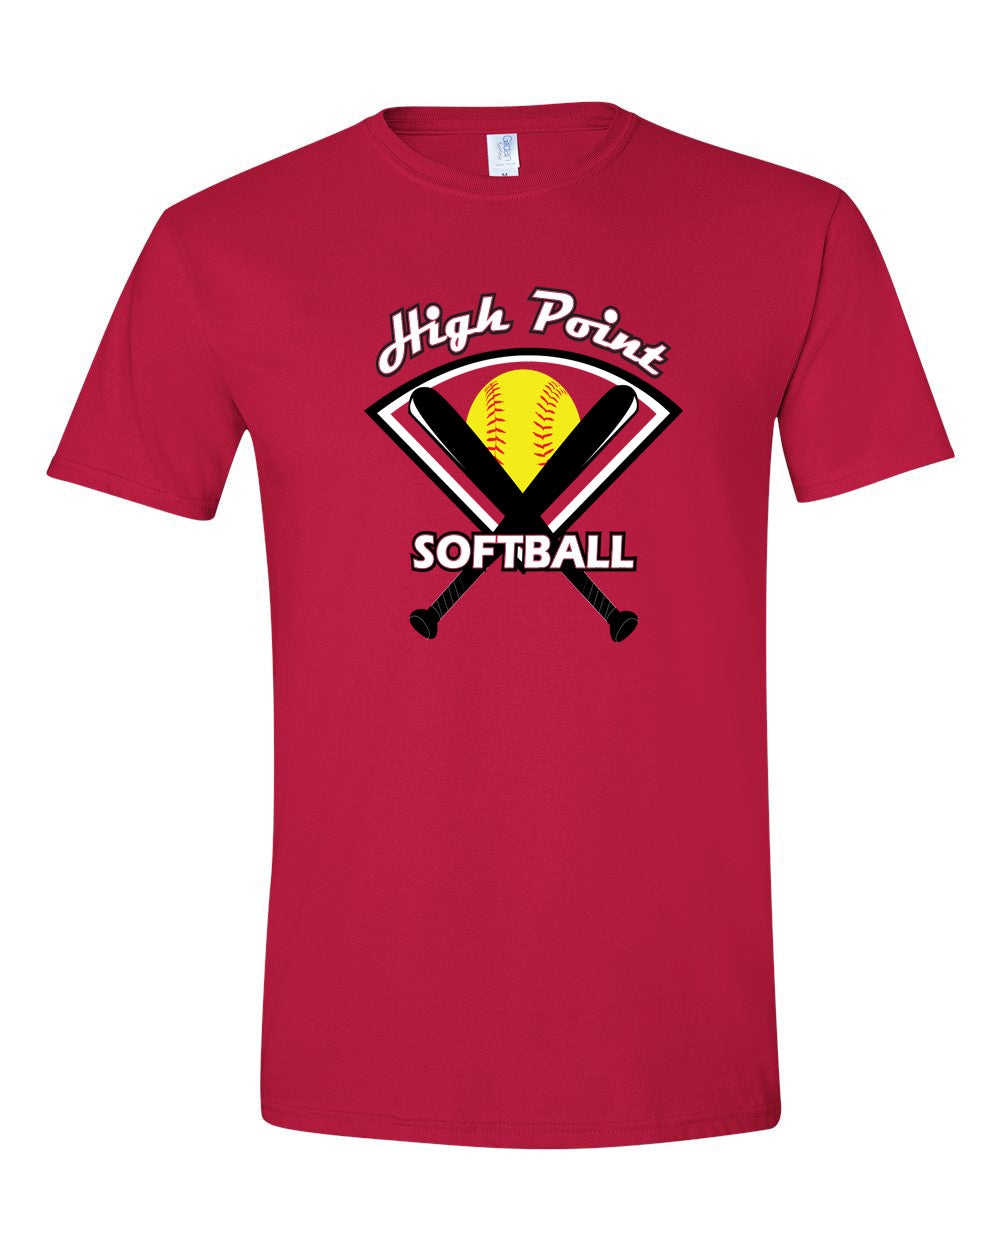 High Point Softball design 4 T-Shirt